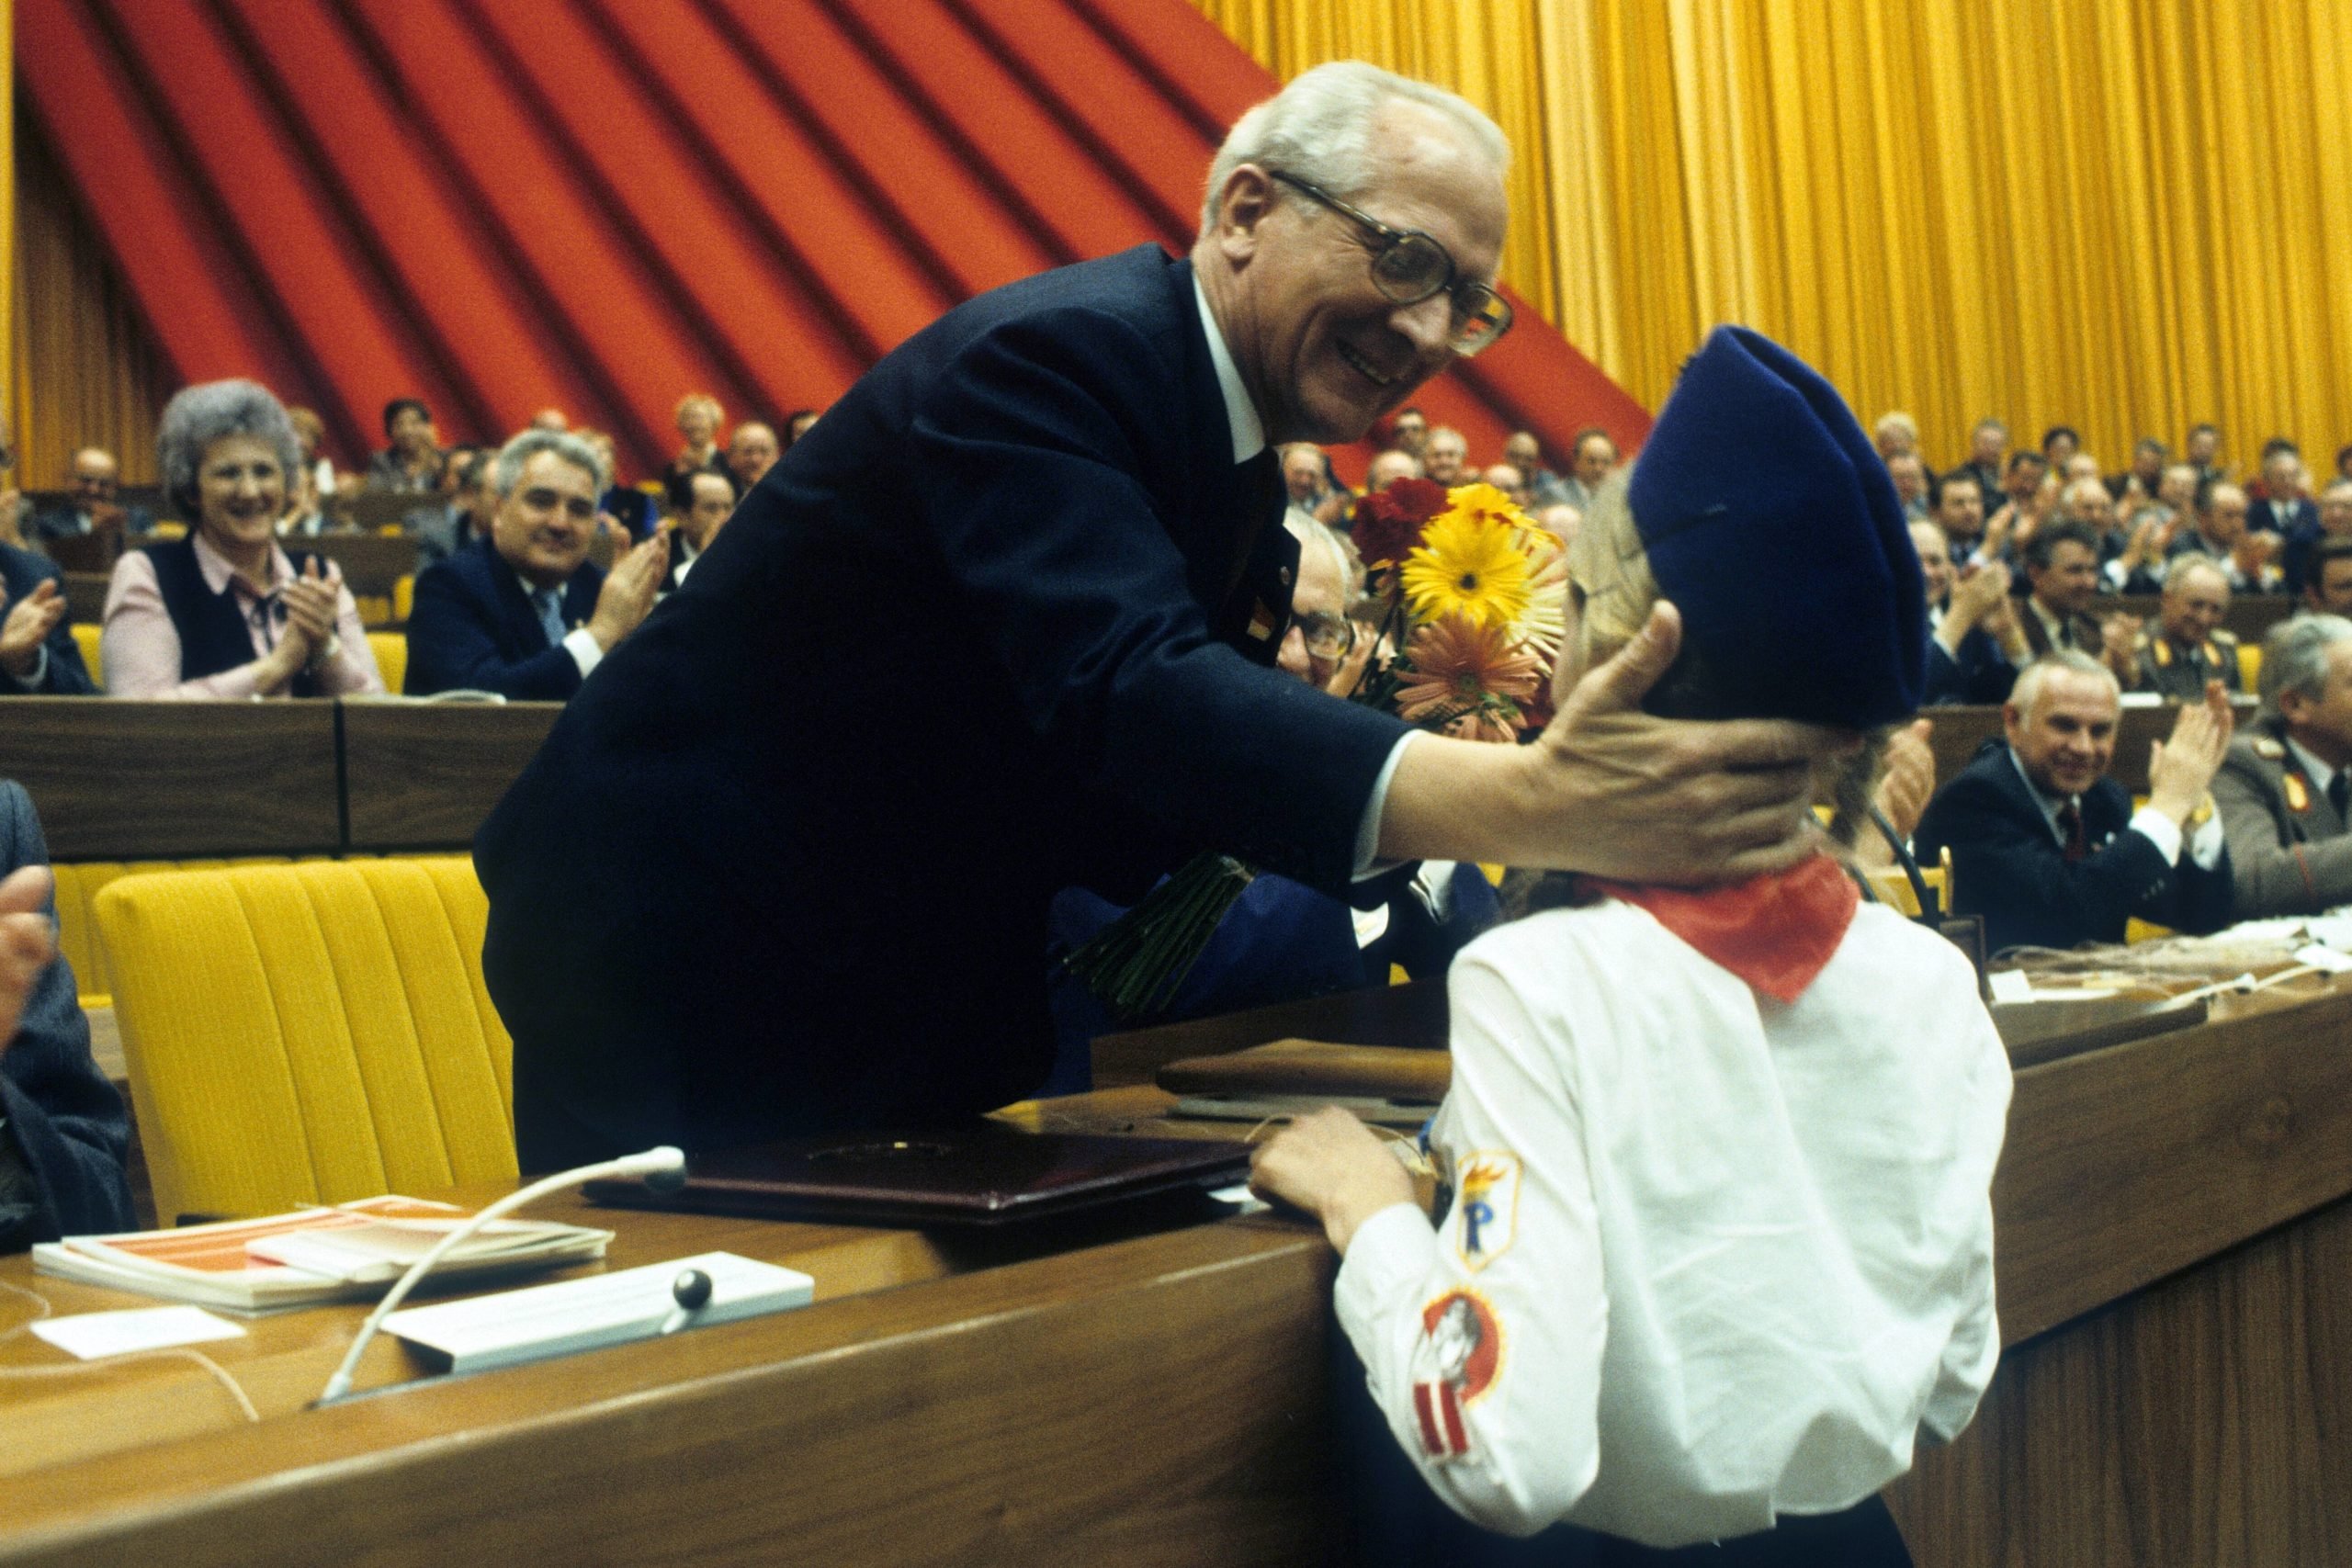 Staatsratsvorsitzender Erich Honecker streichelt eine Thälmann-Pionierin zum X. Parteitag der SED, April 1981. Foto: Imago/Werner Schulze